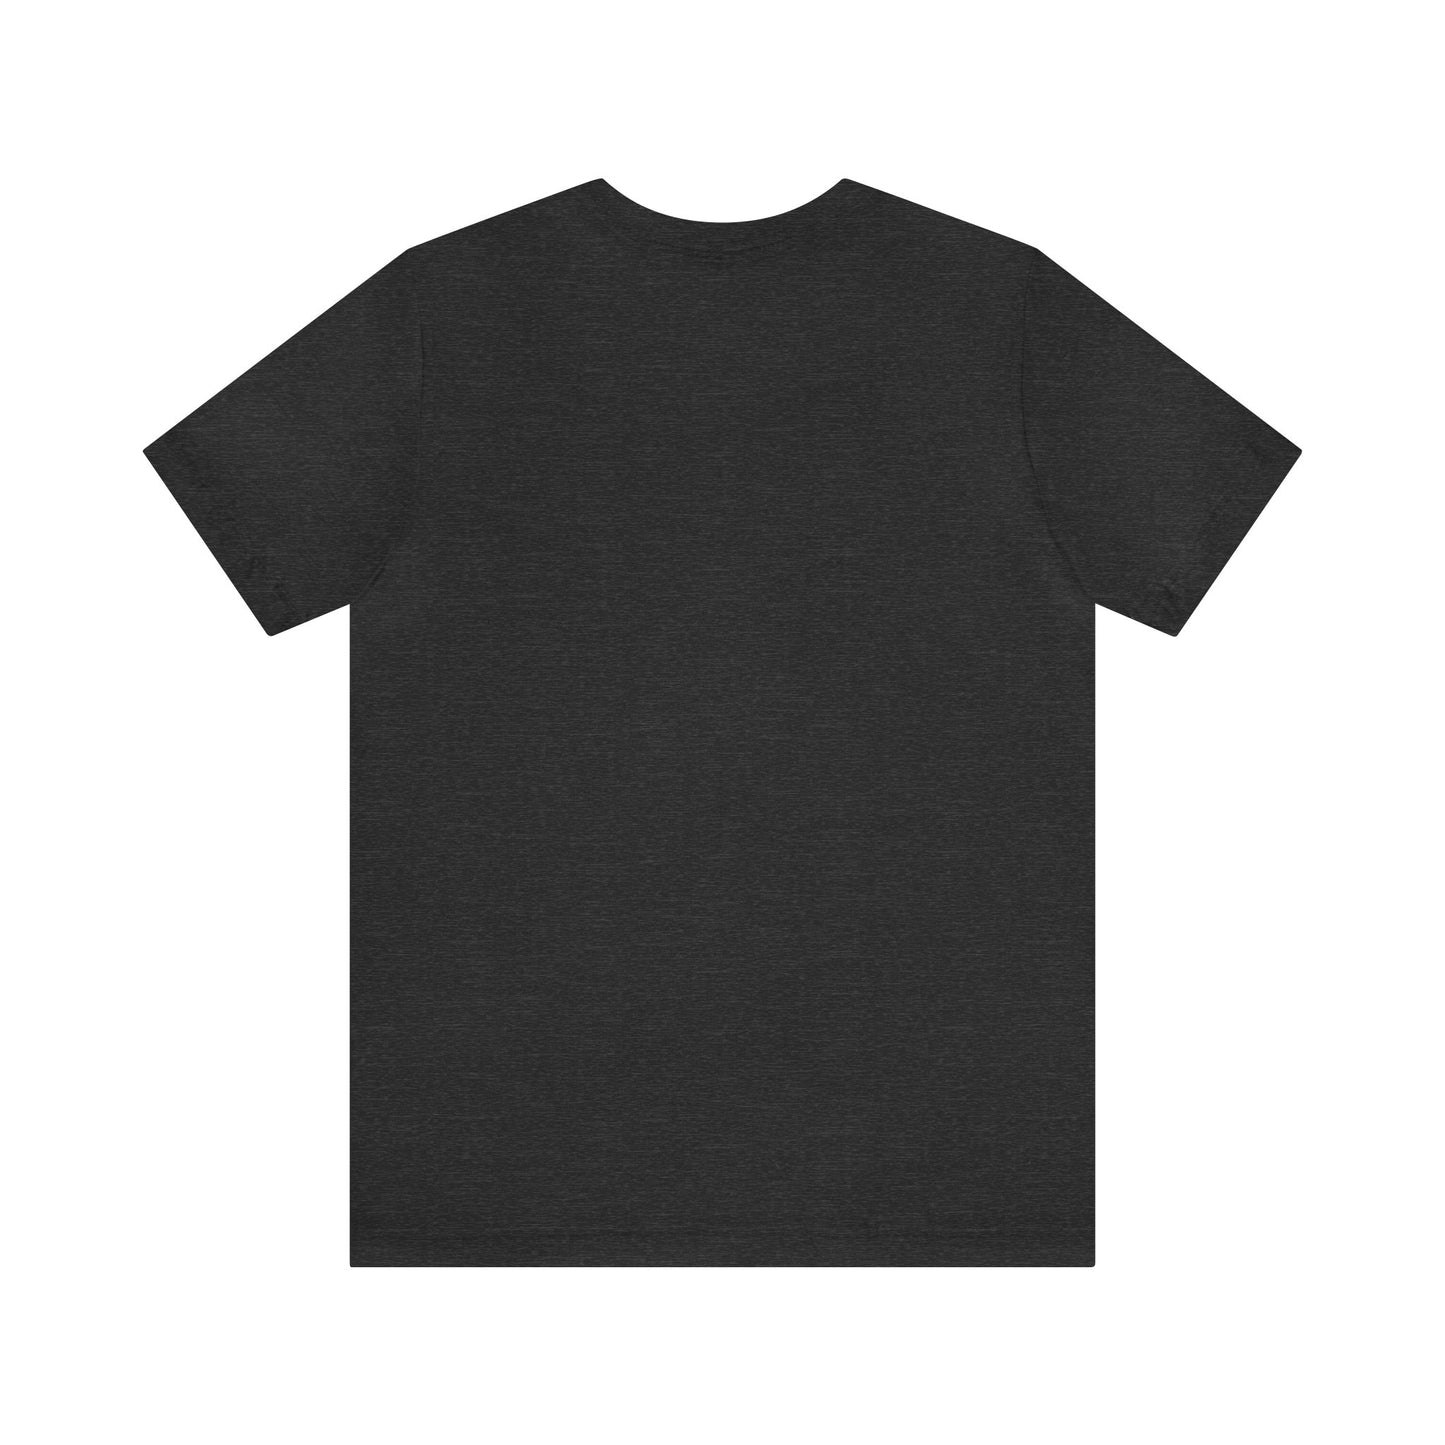 Corgi Shirt - Funny Gift for Corgi Lovers